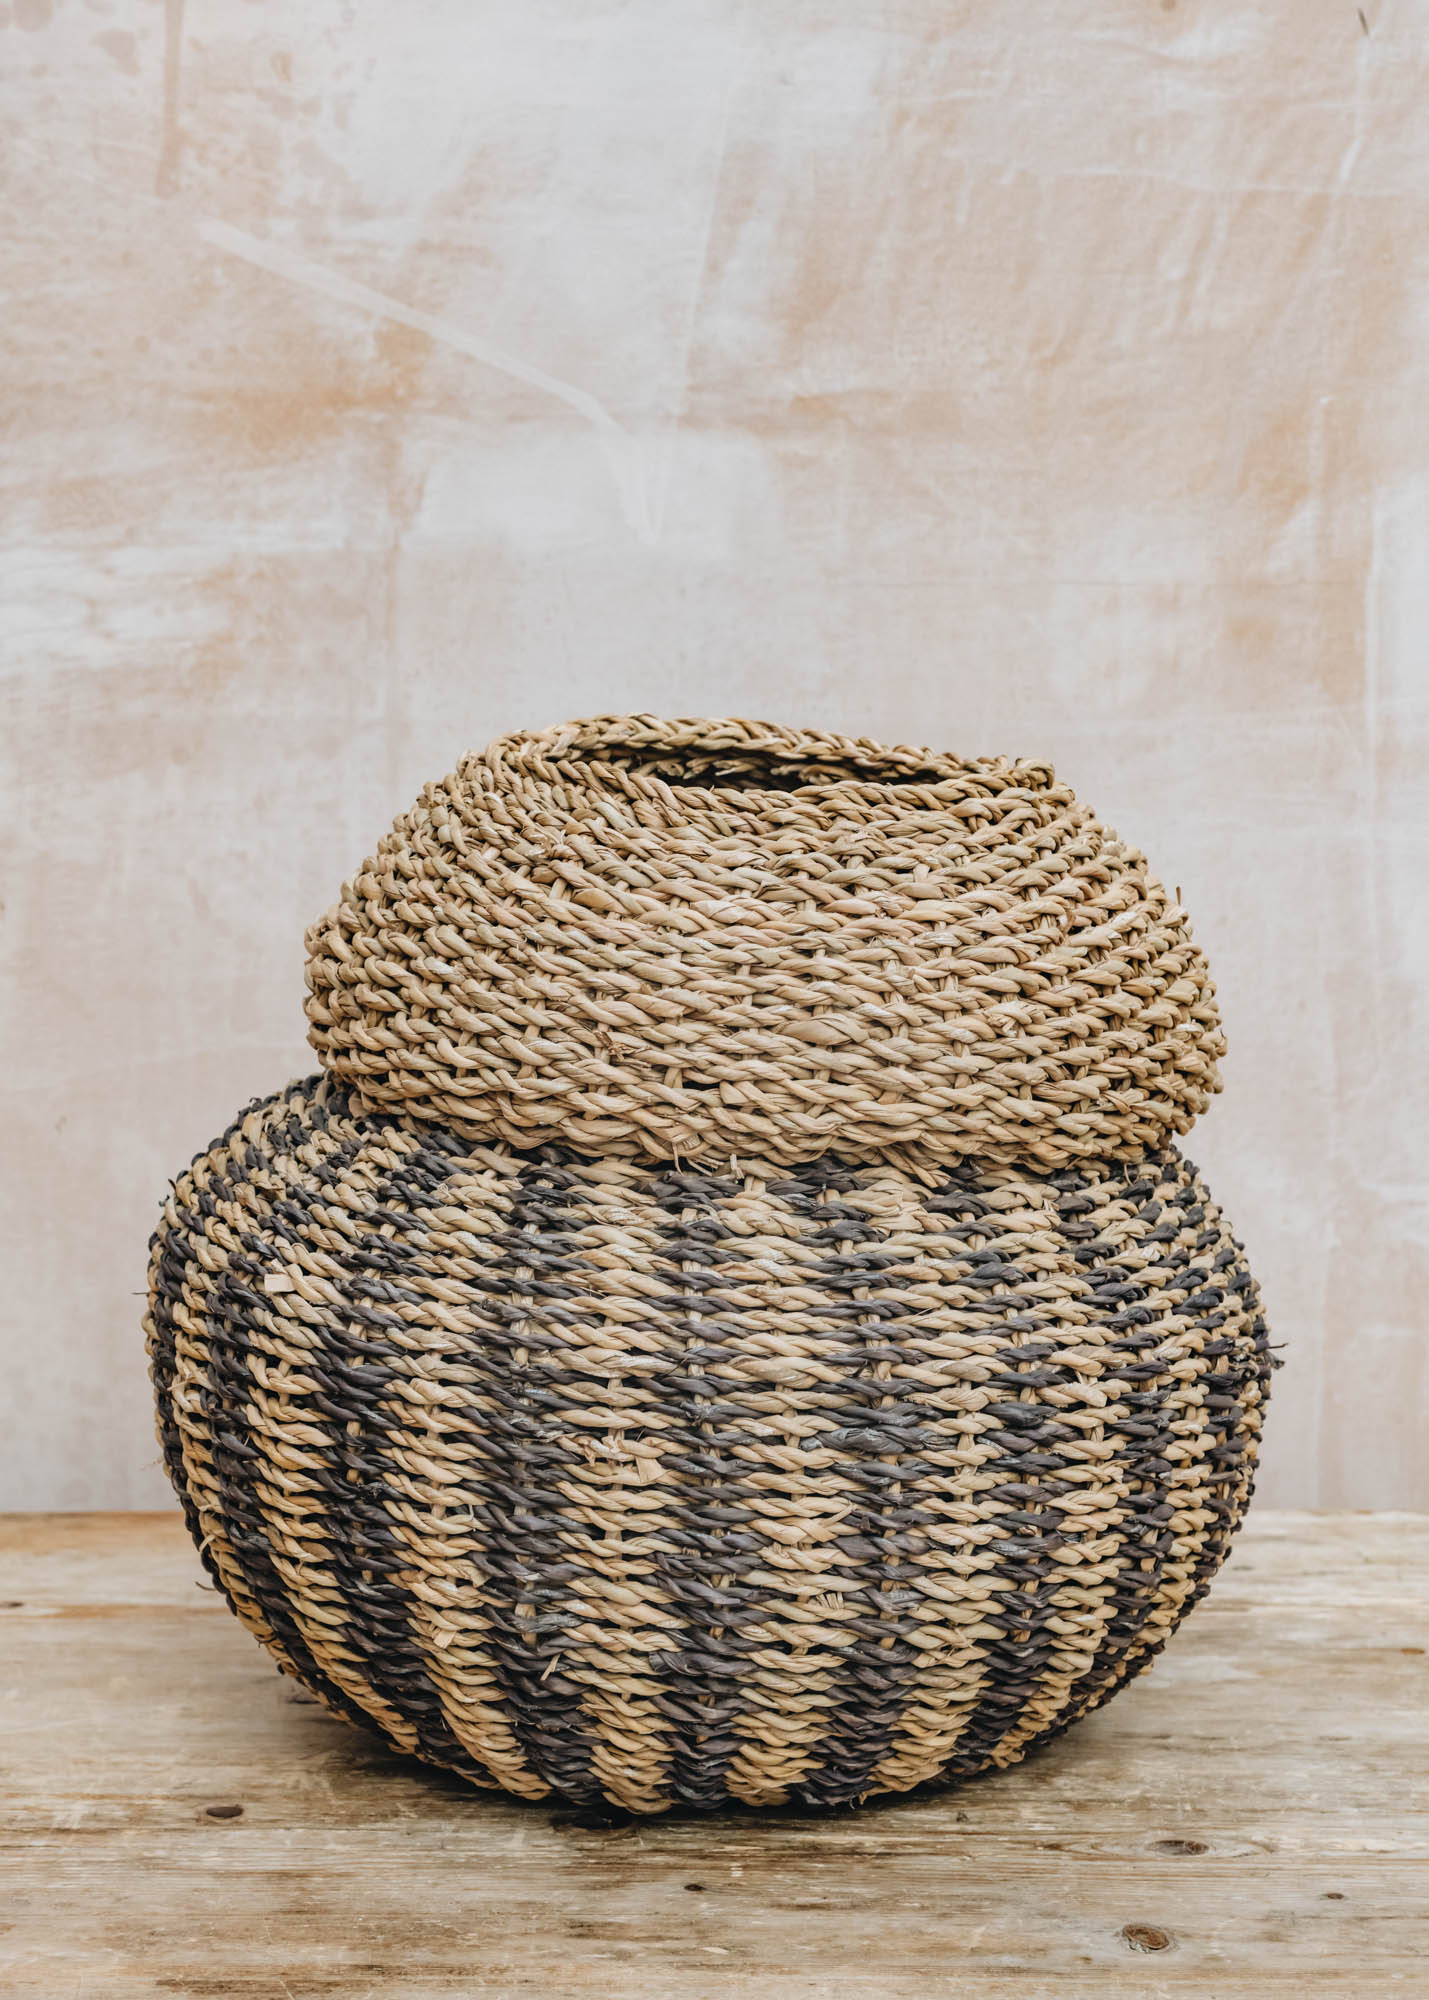 Large Dudley Vase Shaped Basket in Brown